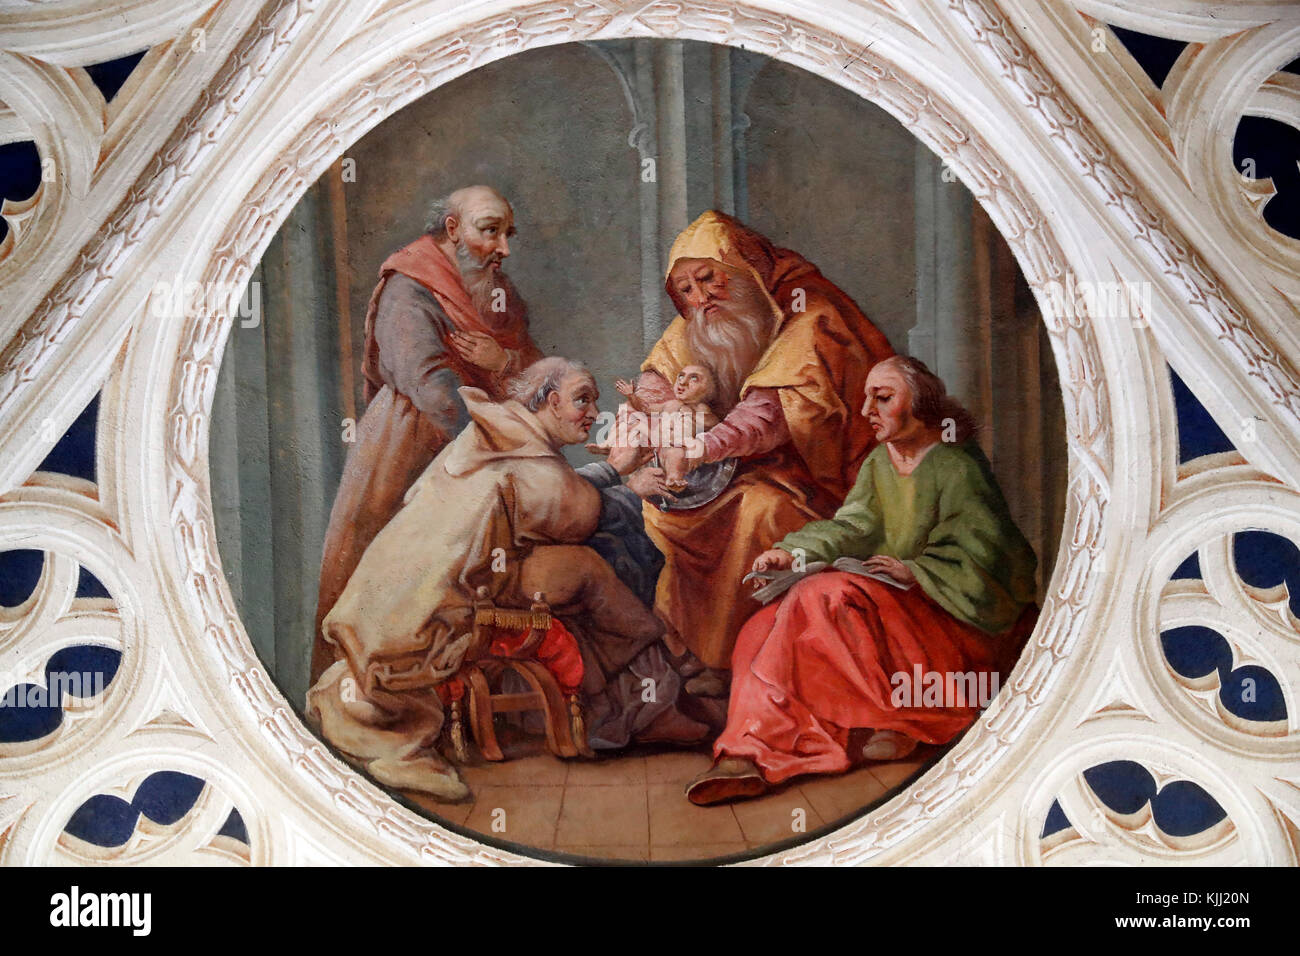 La circuncisión de Abraham. La pintura. Sallanches. Francia. Foto de stock